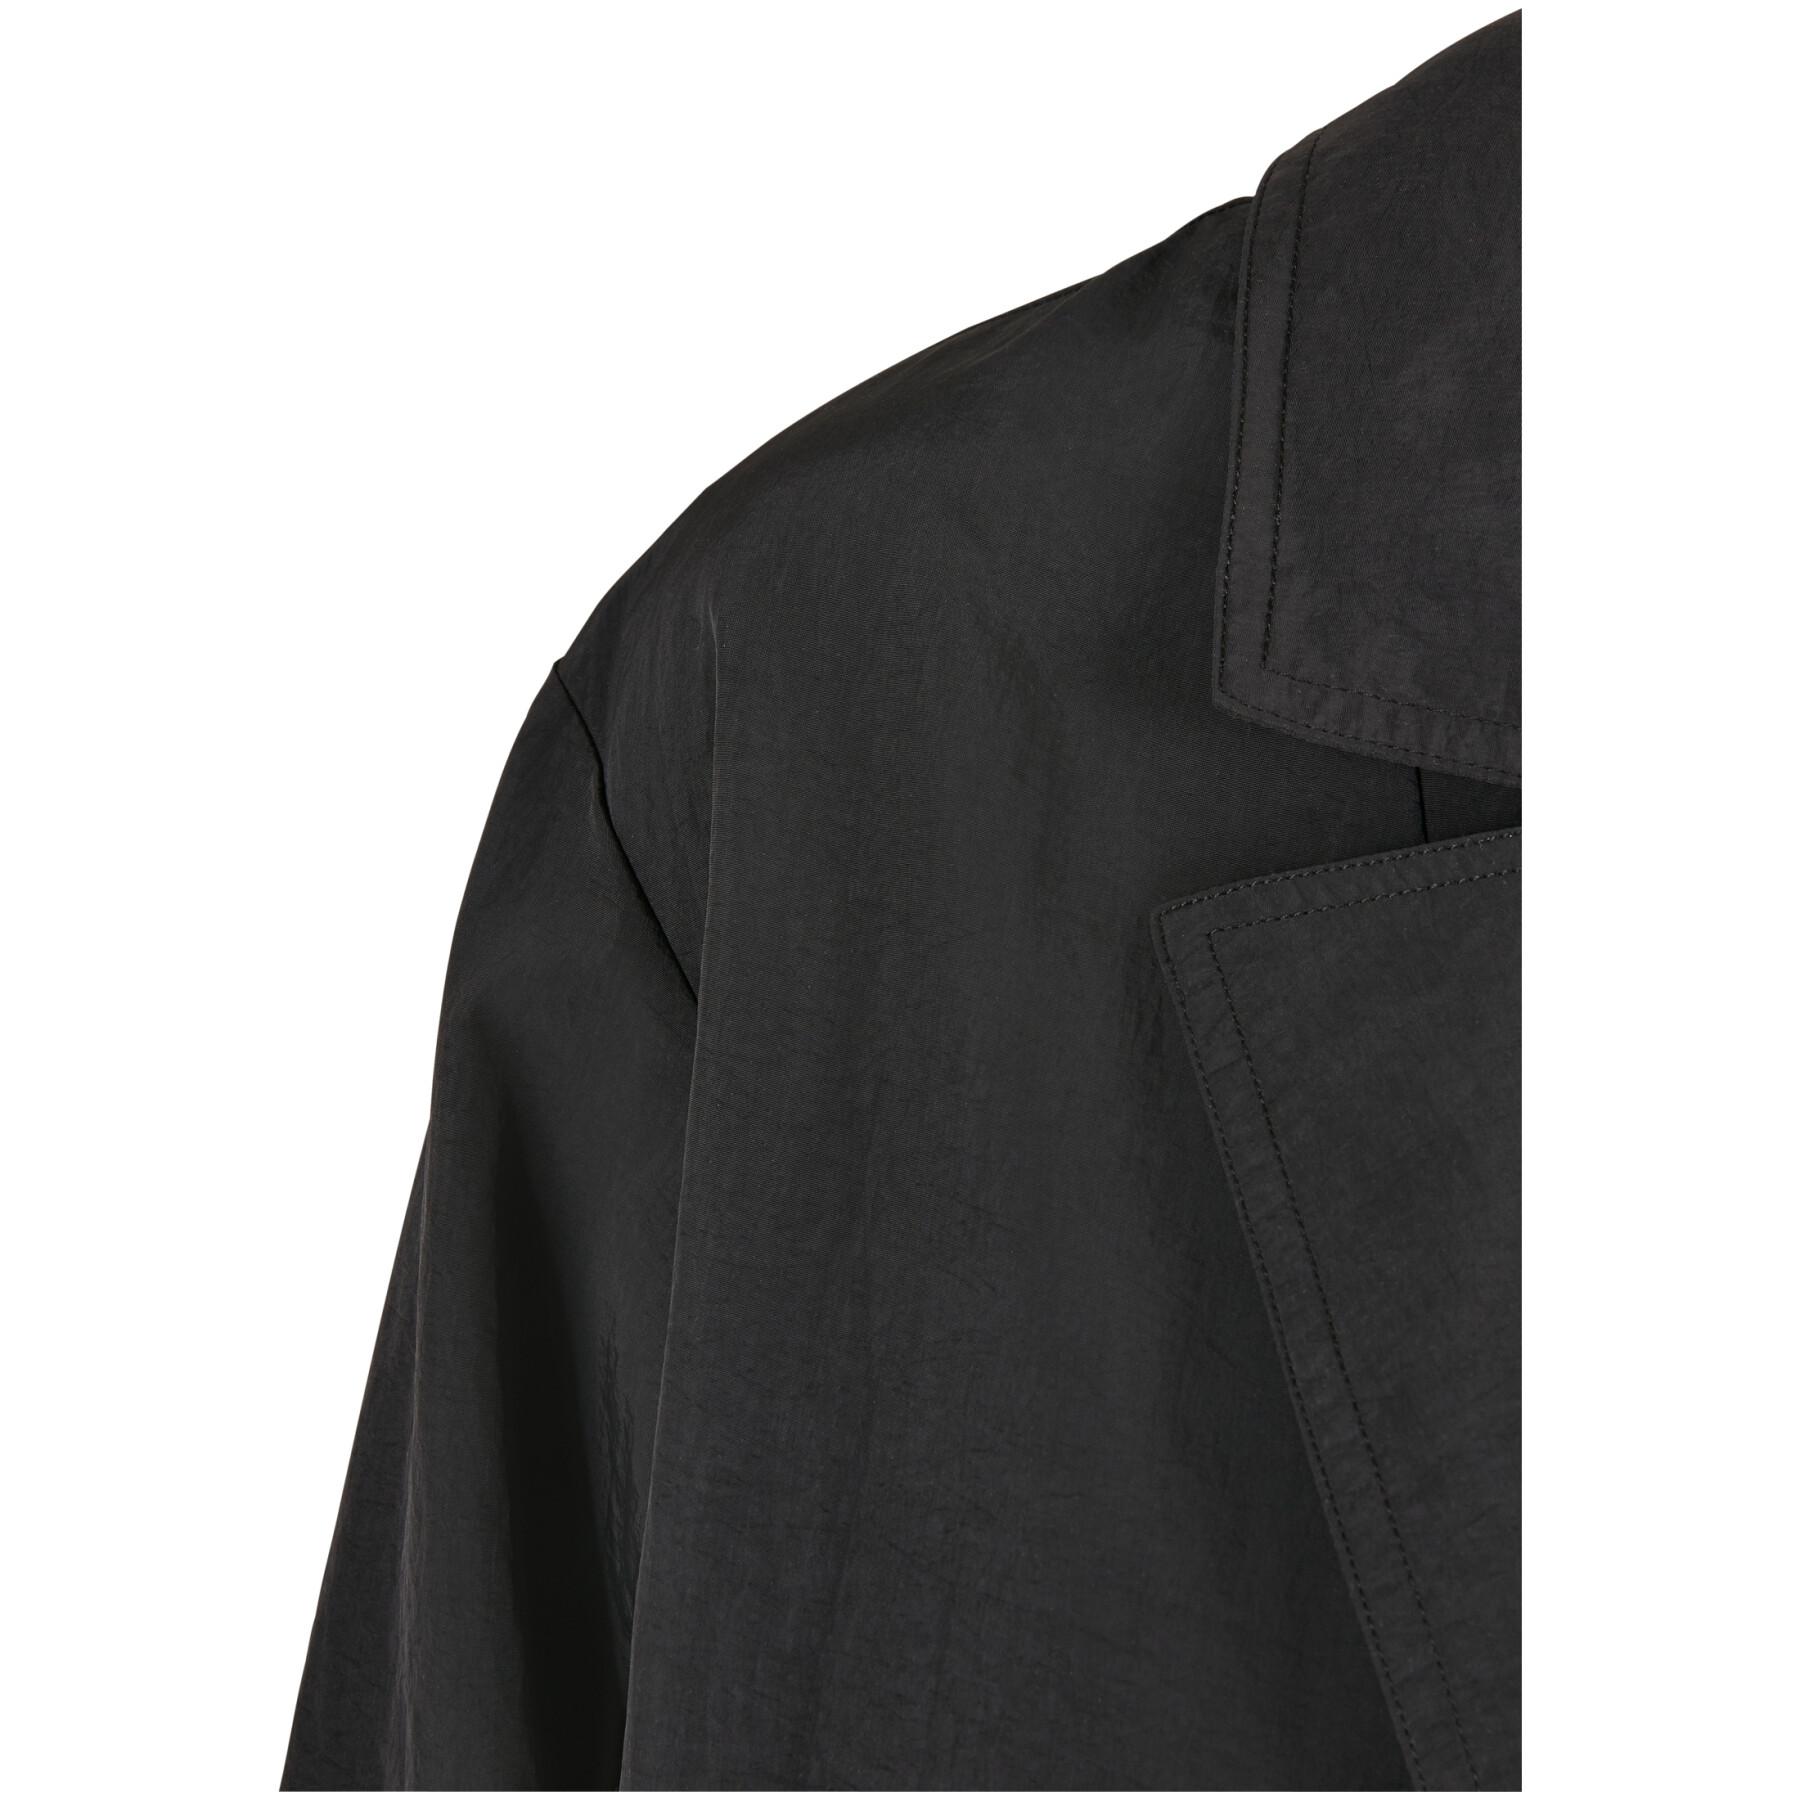 Damski oversizowy blazer z marszczonego nylonu Urban Classics GT